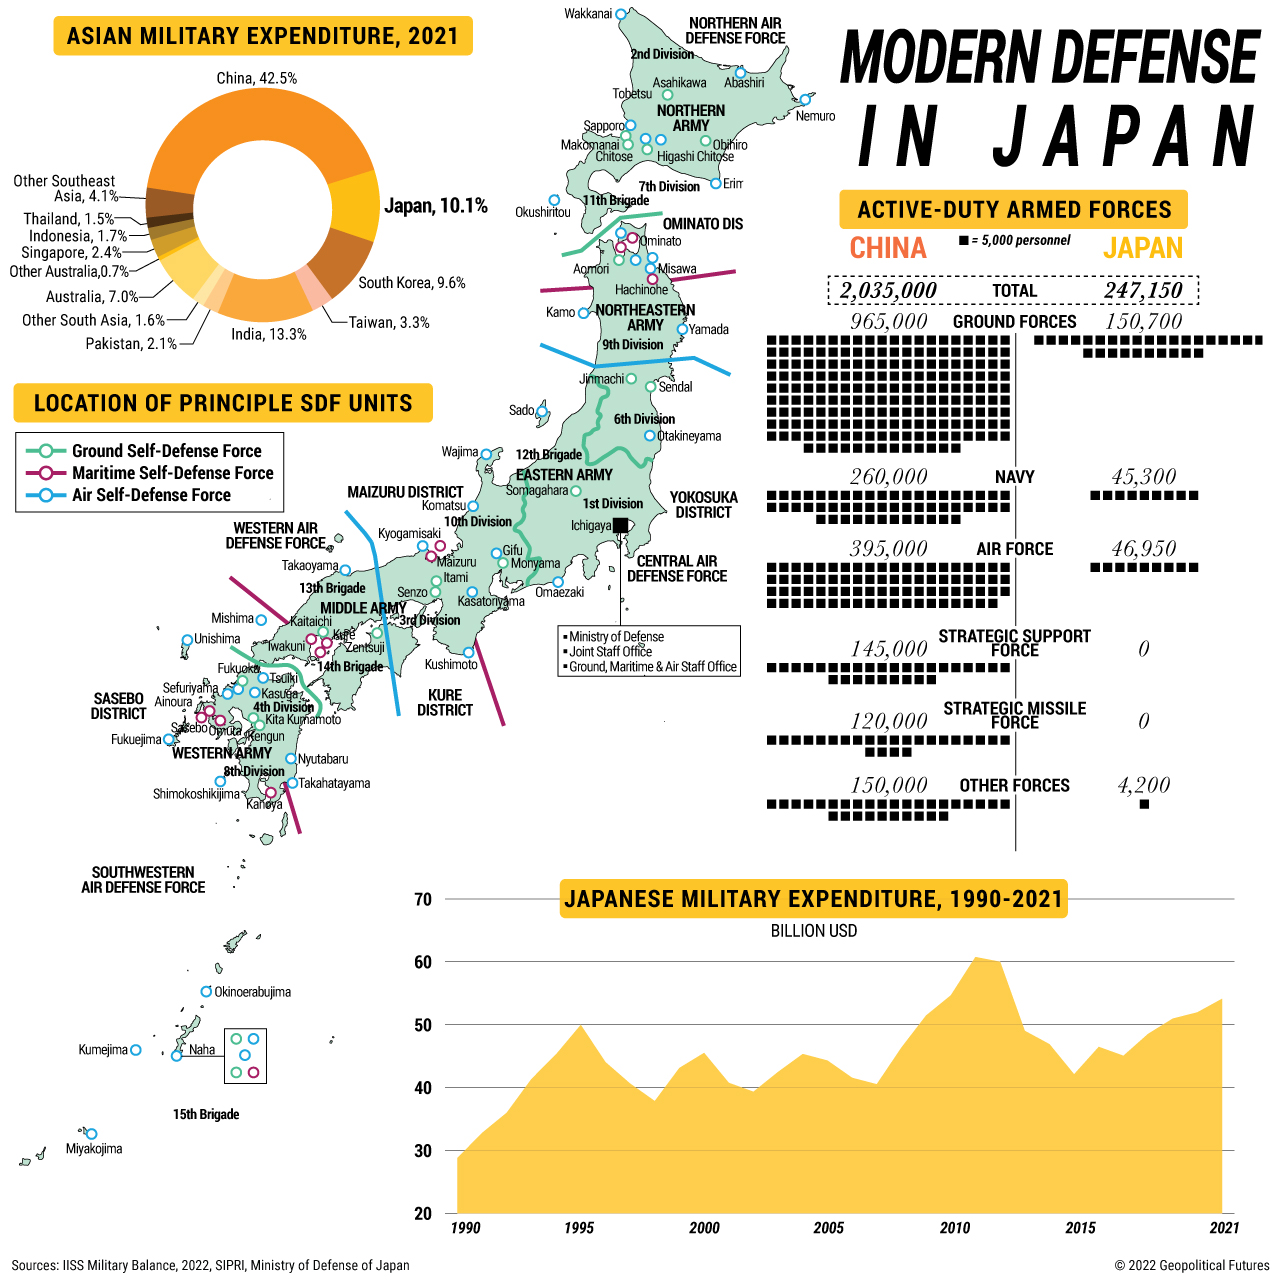 Modern Defense in Japan